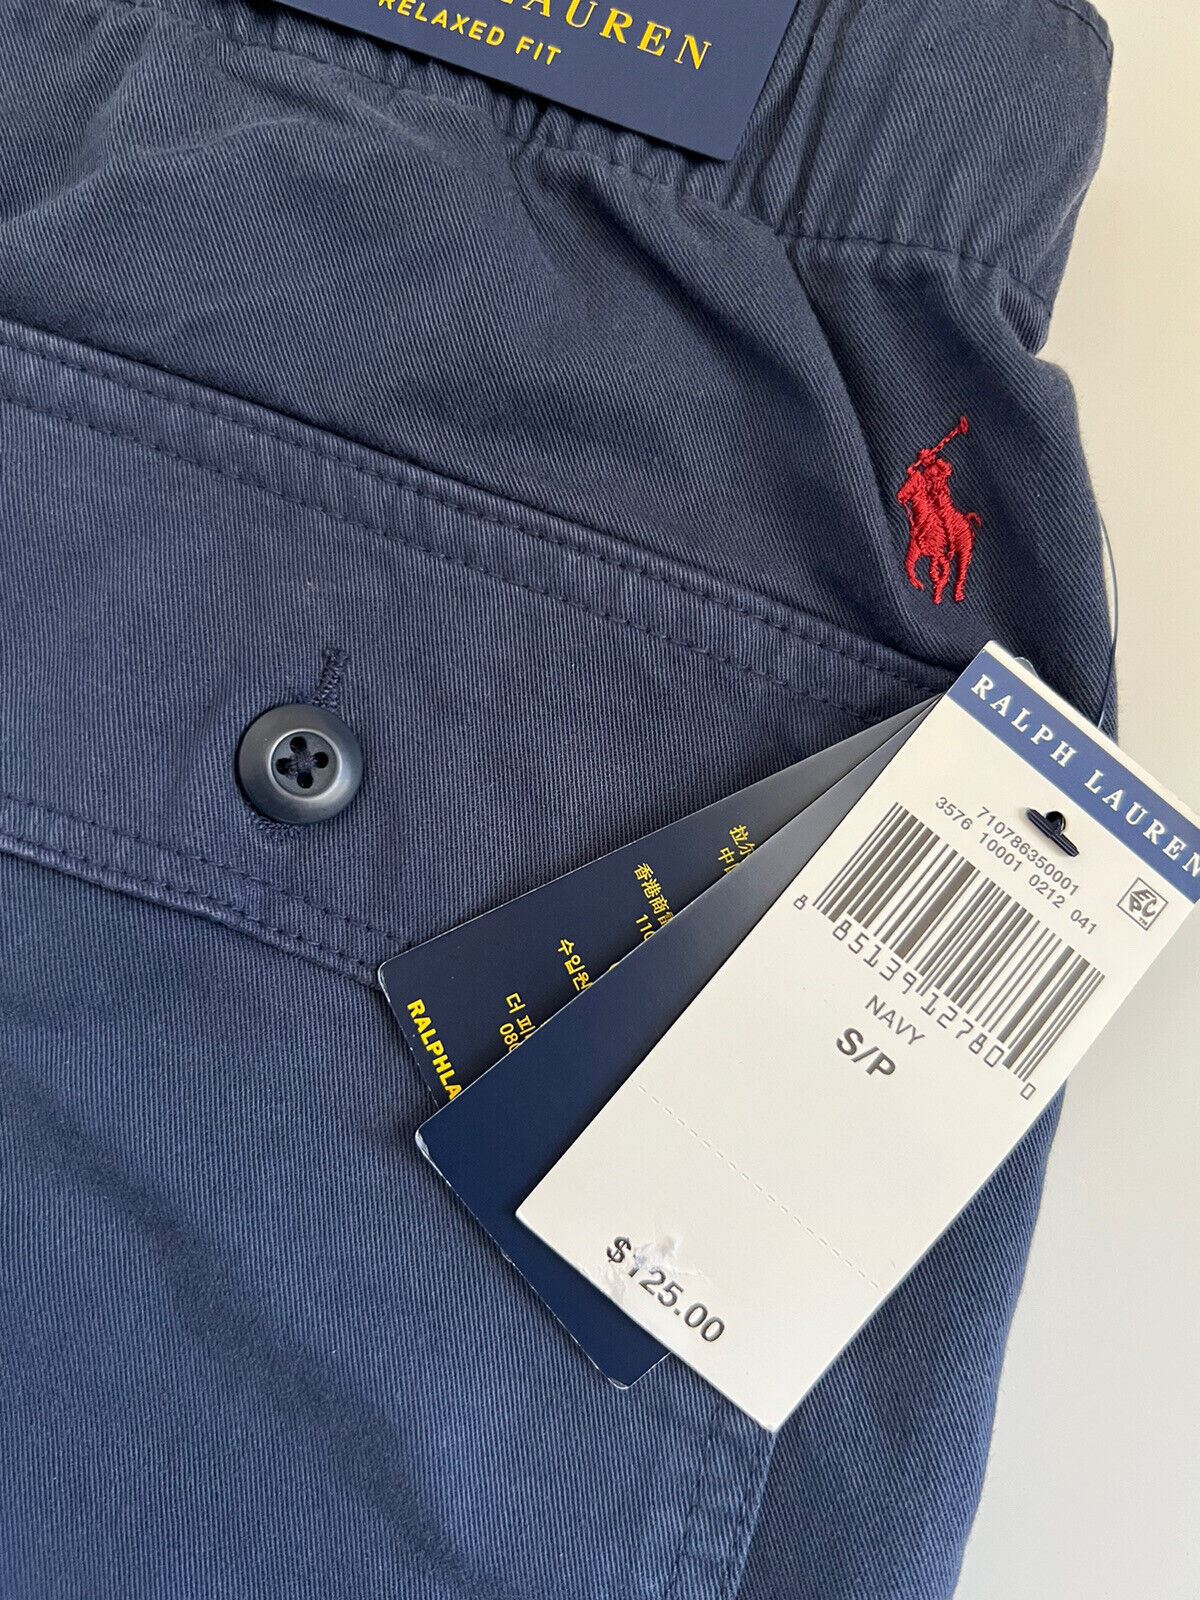 Neu mit Etikett: 125 $ Polo Ralph Lauren Herren-Shorts in Blau, Größe S